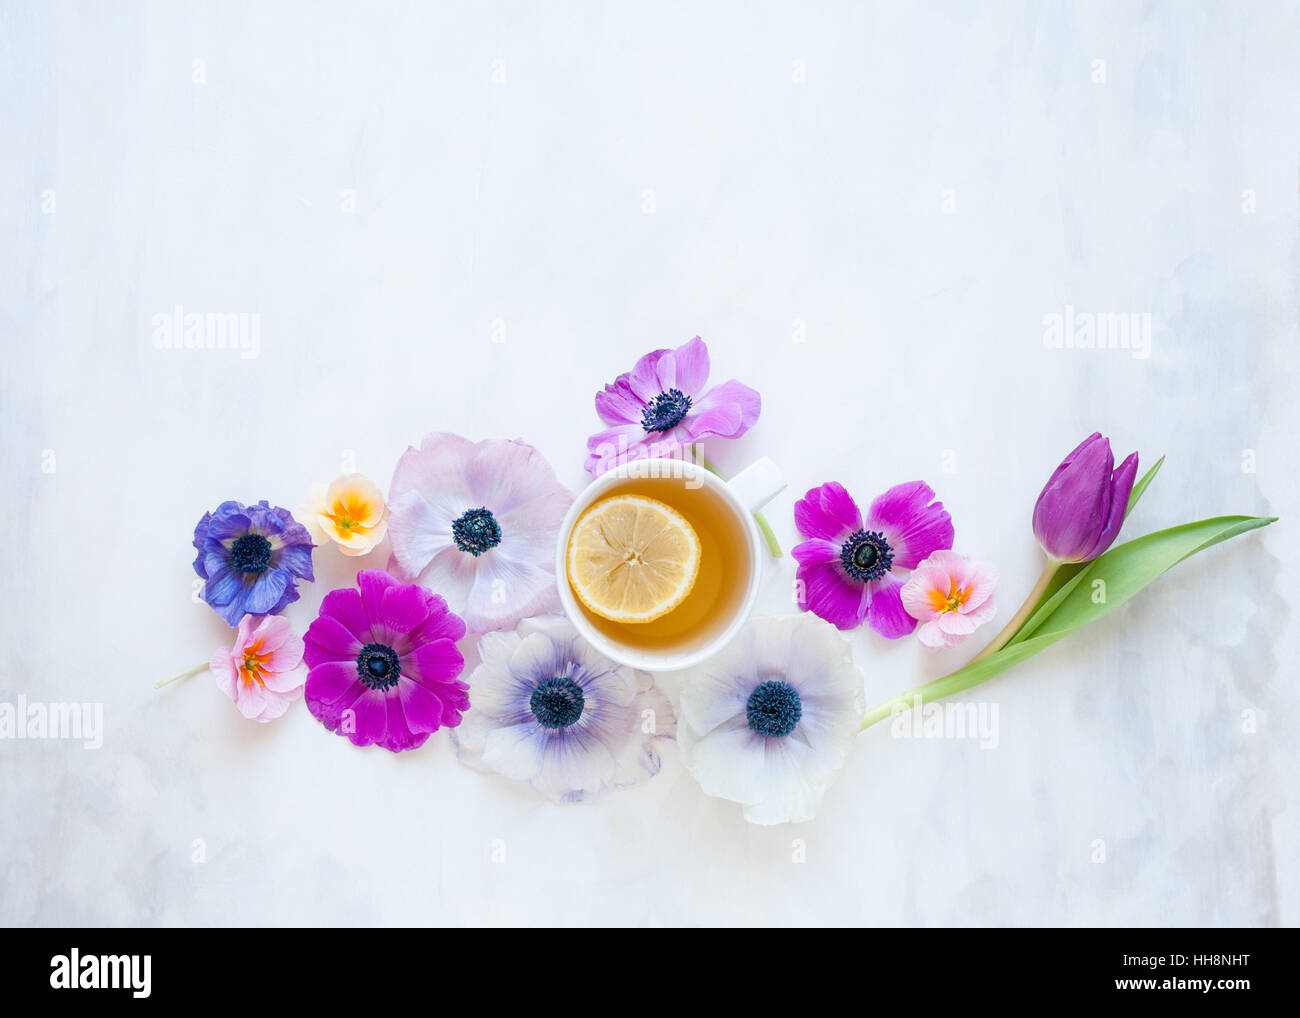 Sentar planas con flores de primavera establecidos en gris y blanco telón pintado con luz natural Foto de stock